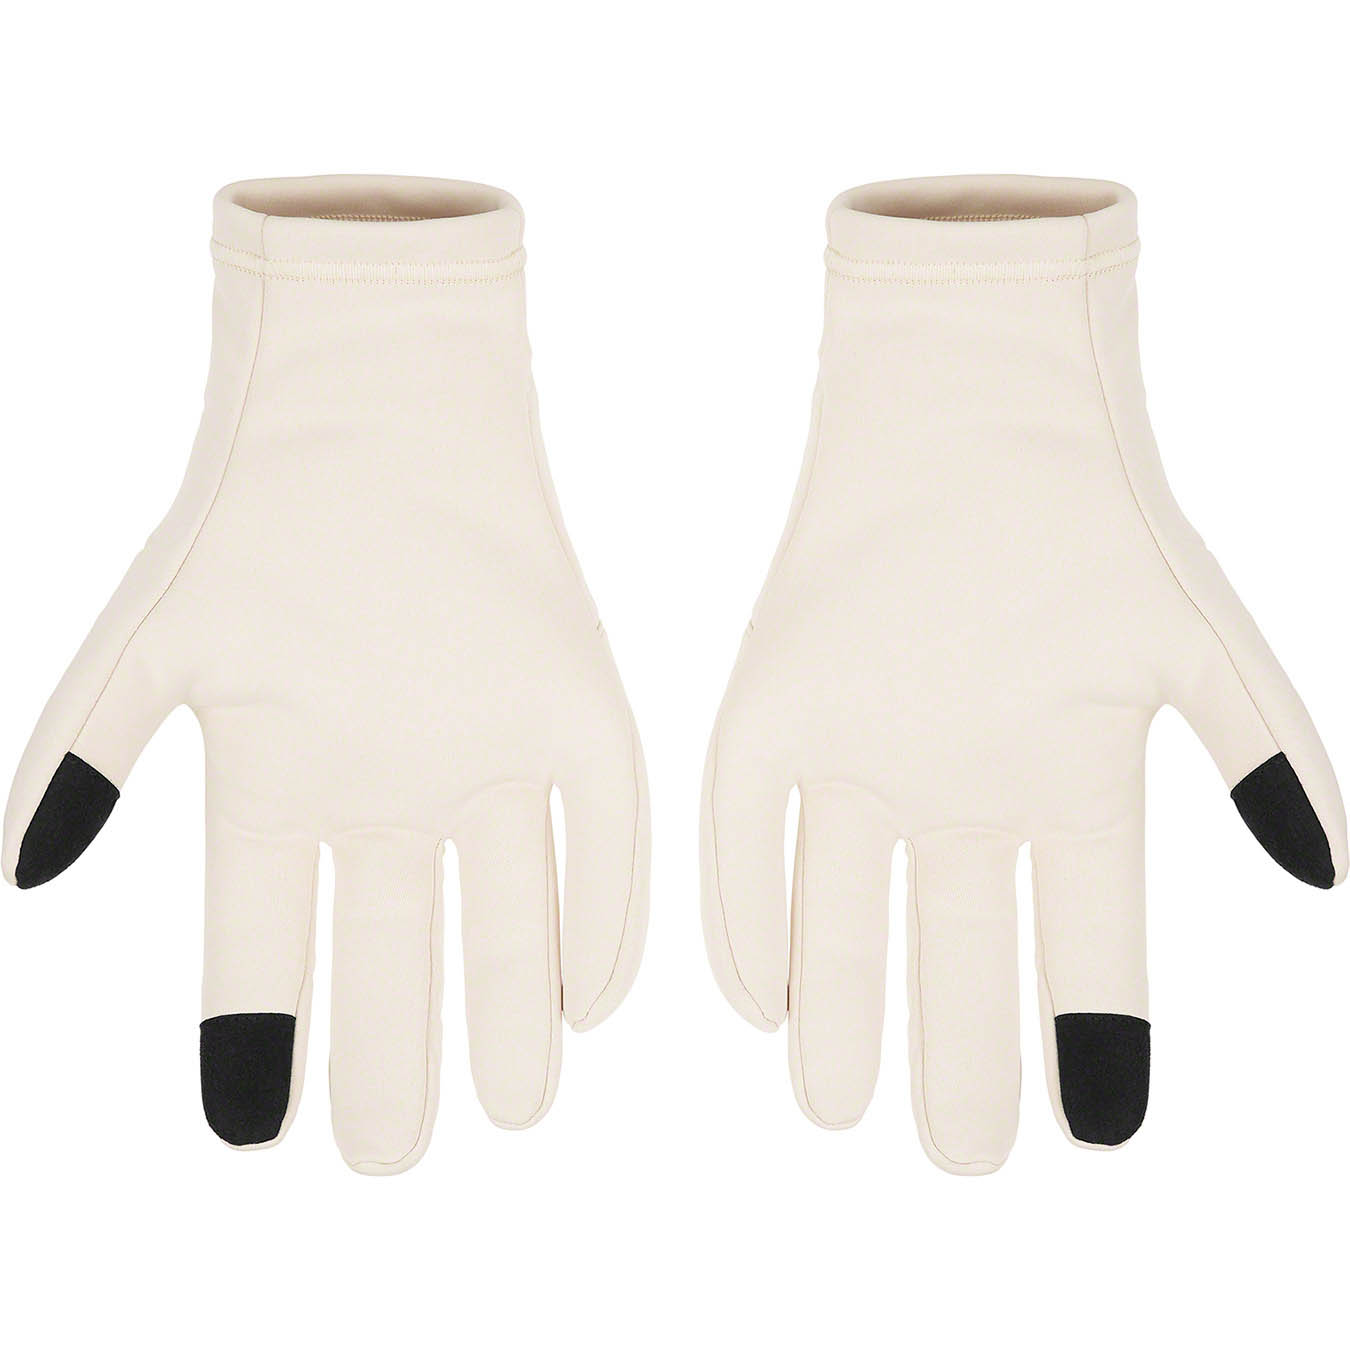 Supreme WINDSTOPPER® Gloves